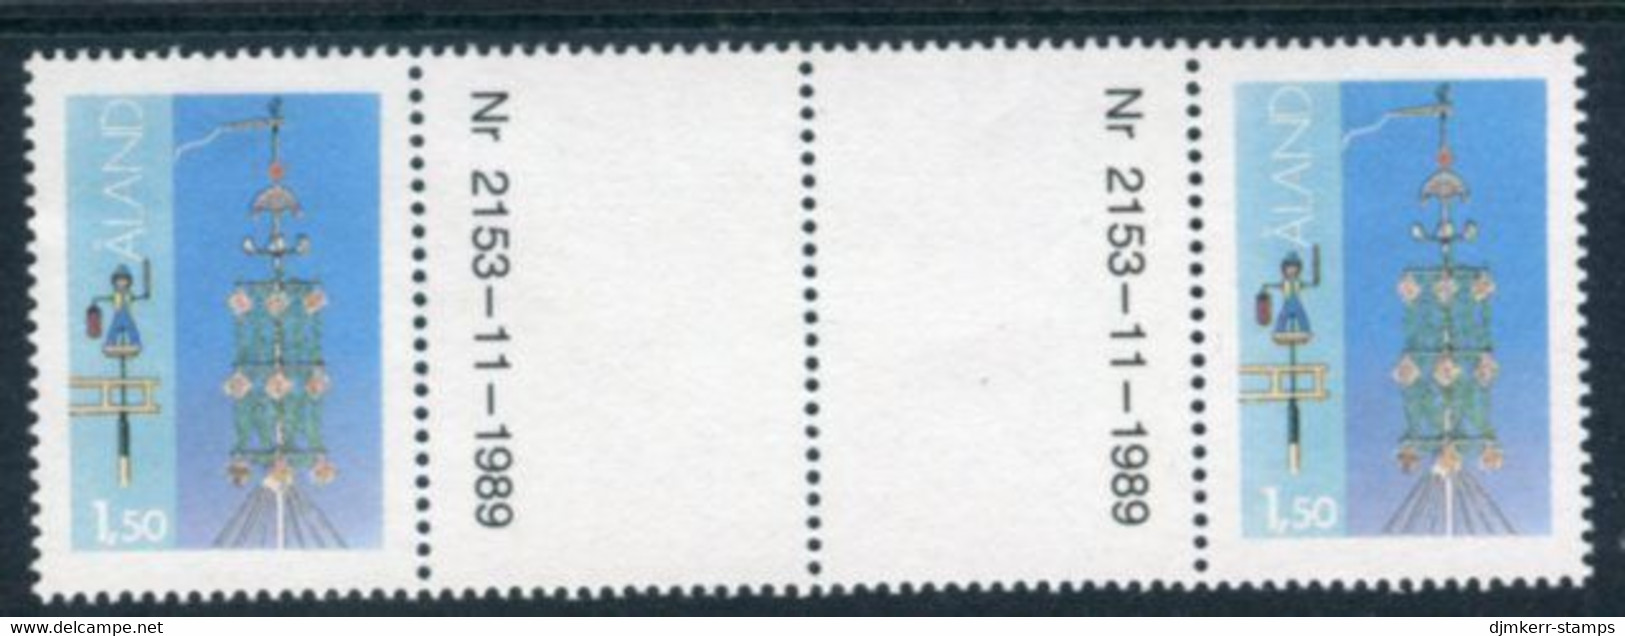 ALAND ISLANDS 1990 Definitive 1.50 M Normal Paper Gutter Pair MNH / **.  Michel 10x - Ålandinseln